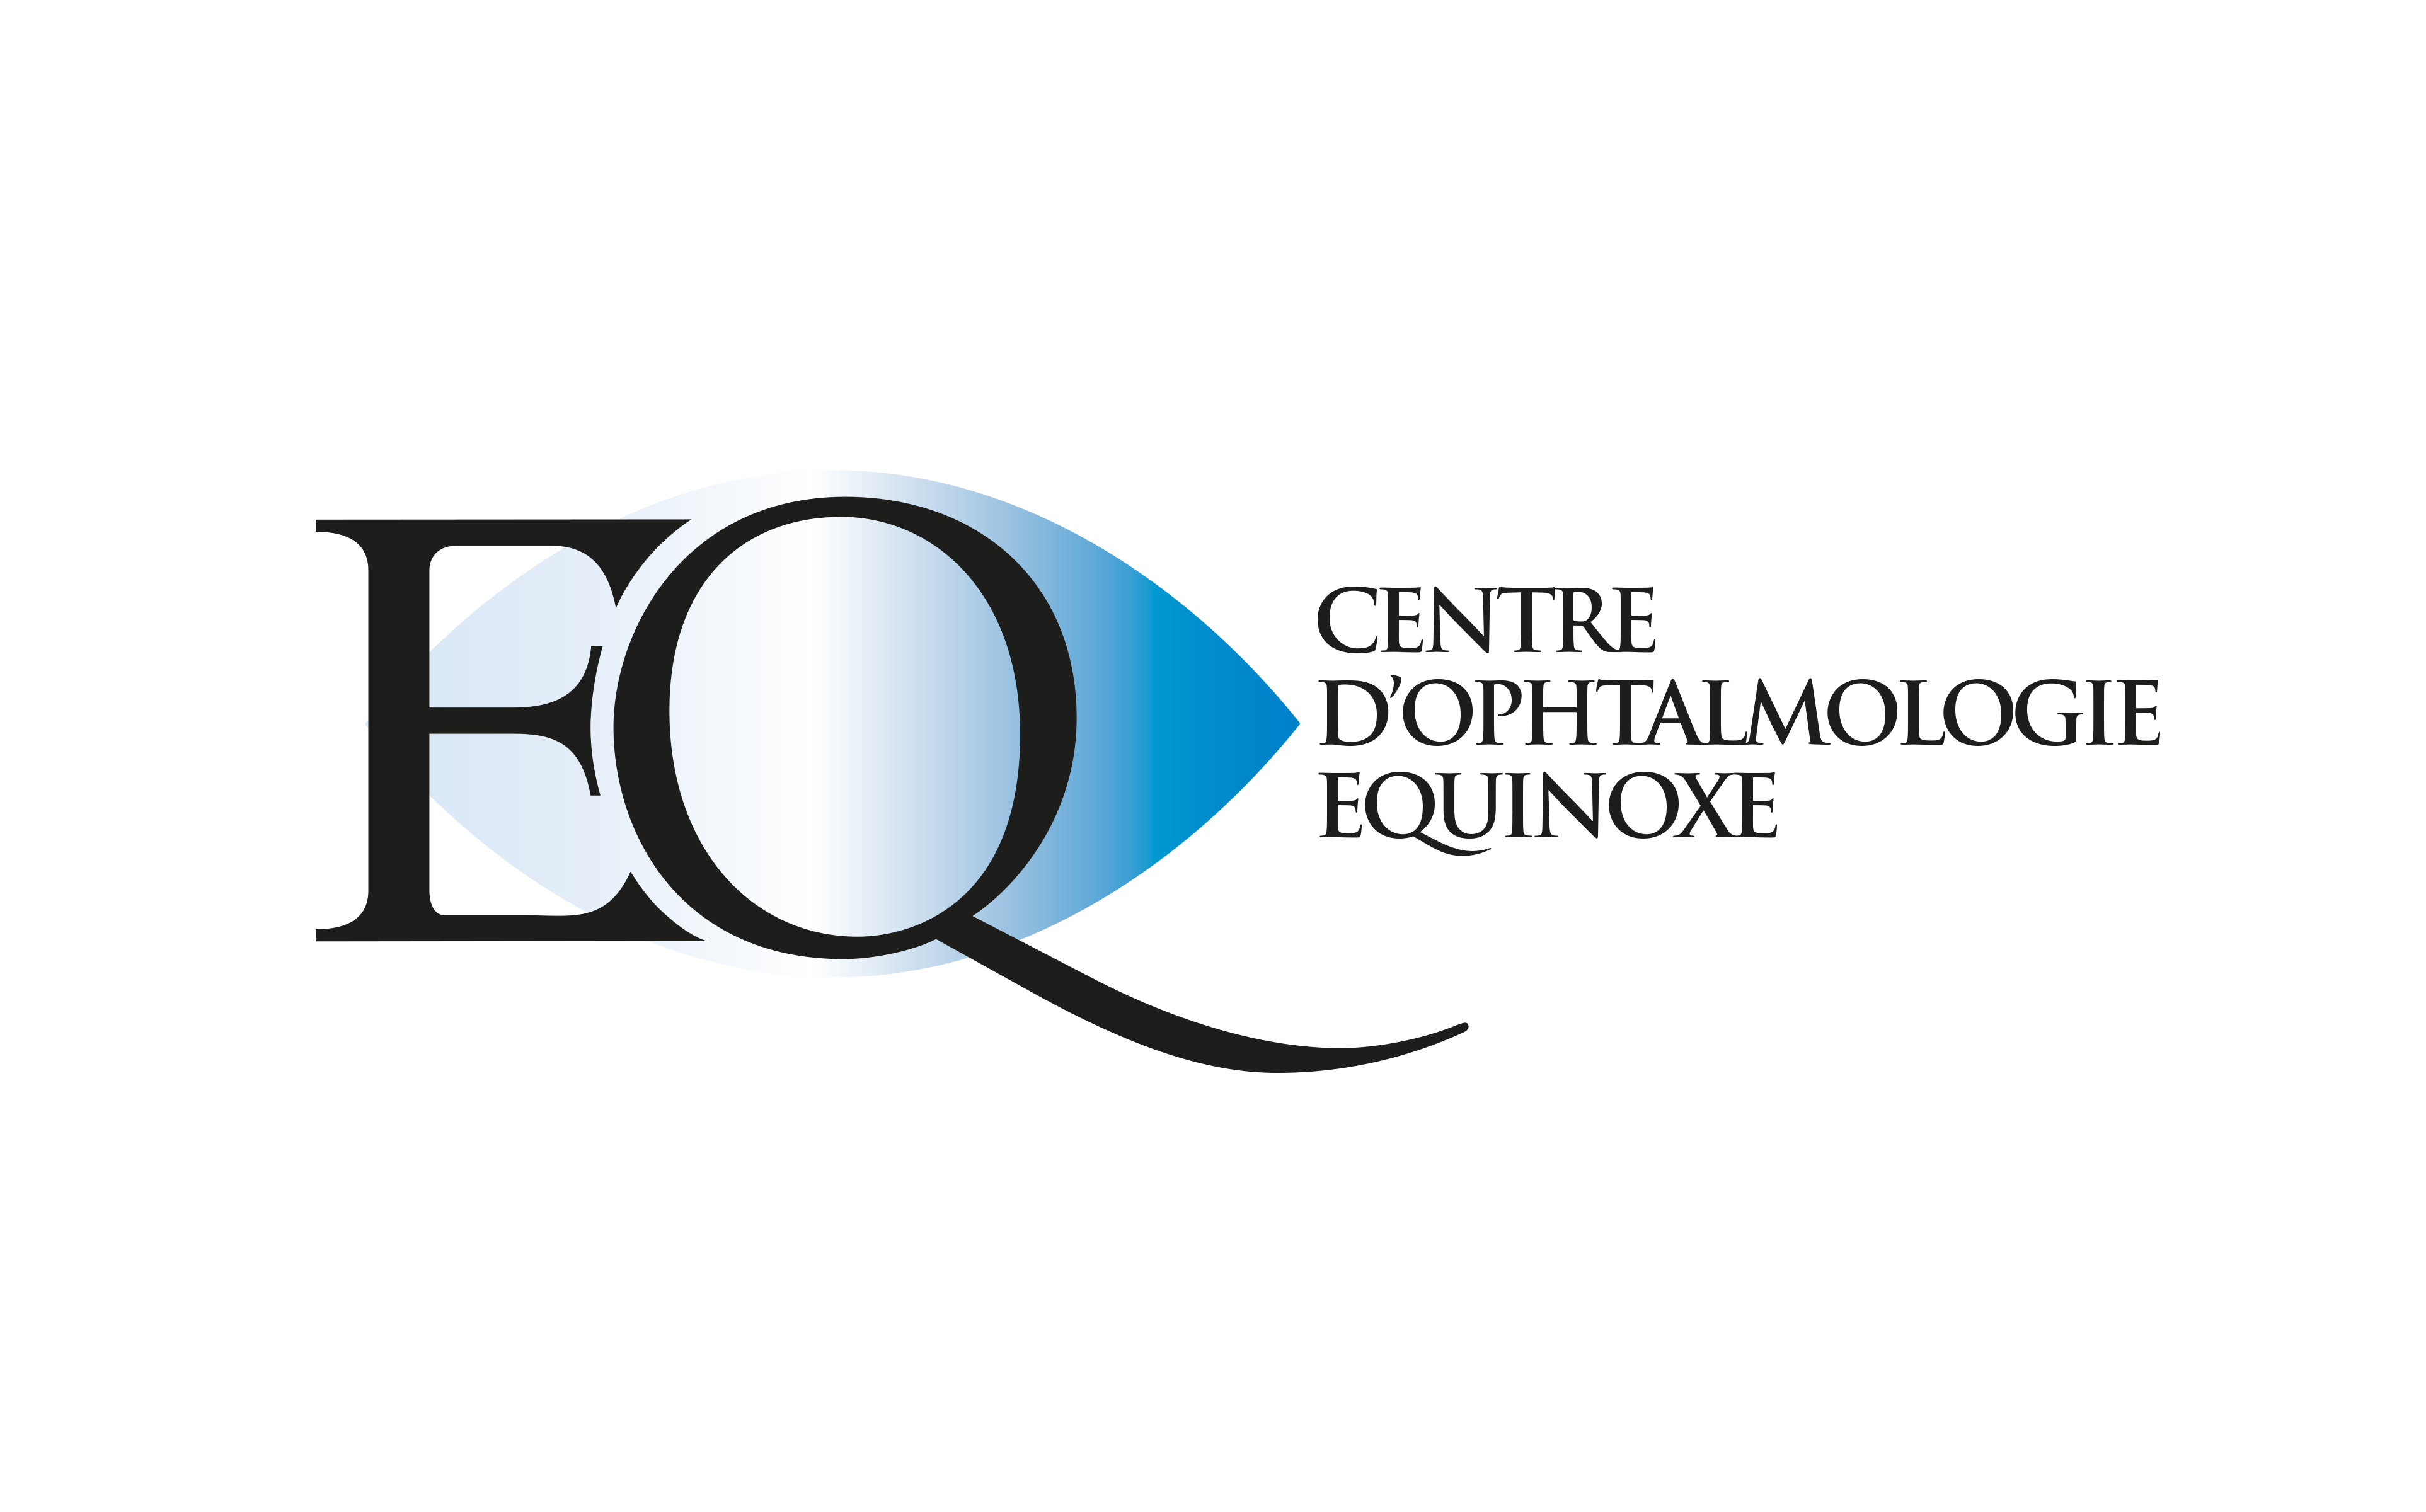 Identité visuelle du Centre ophtalmologique Equinoxe à Avignon